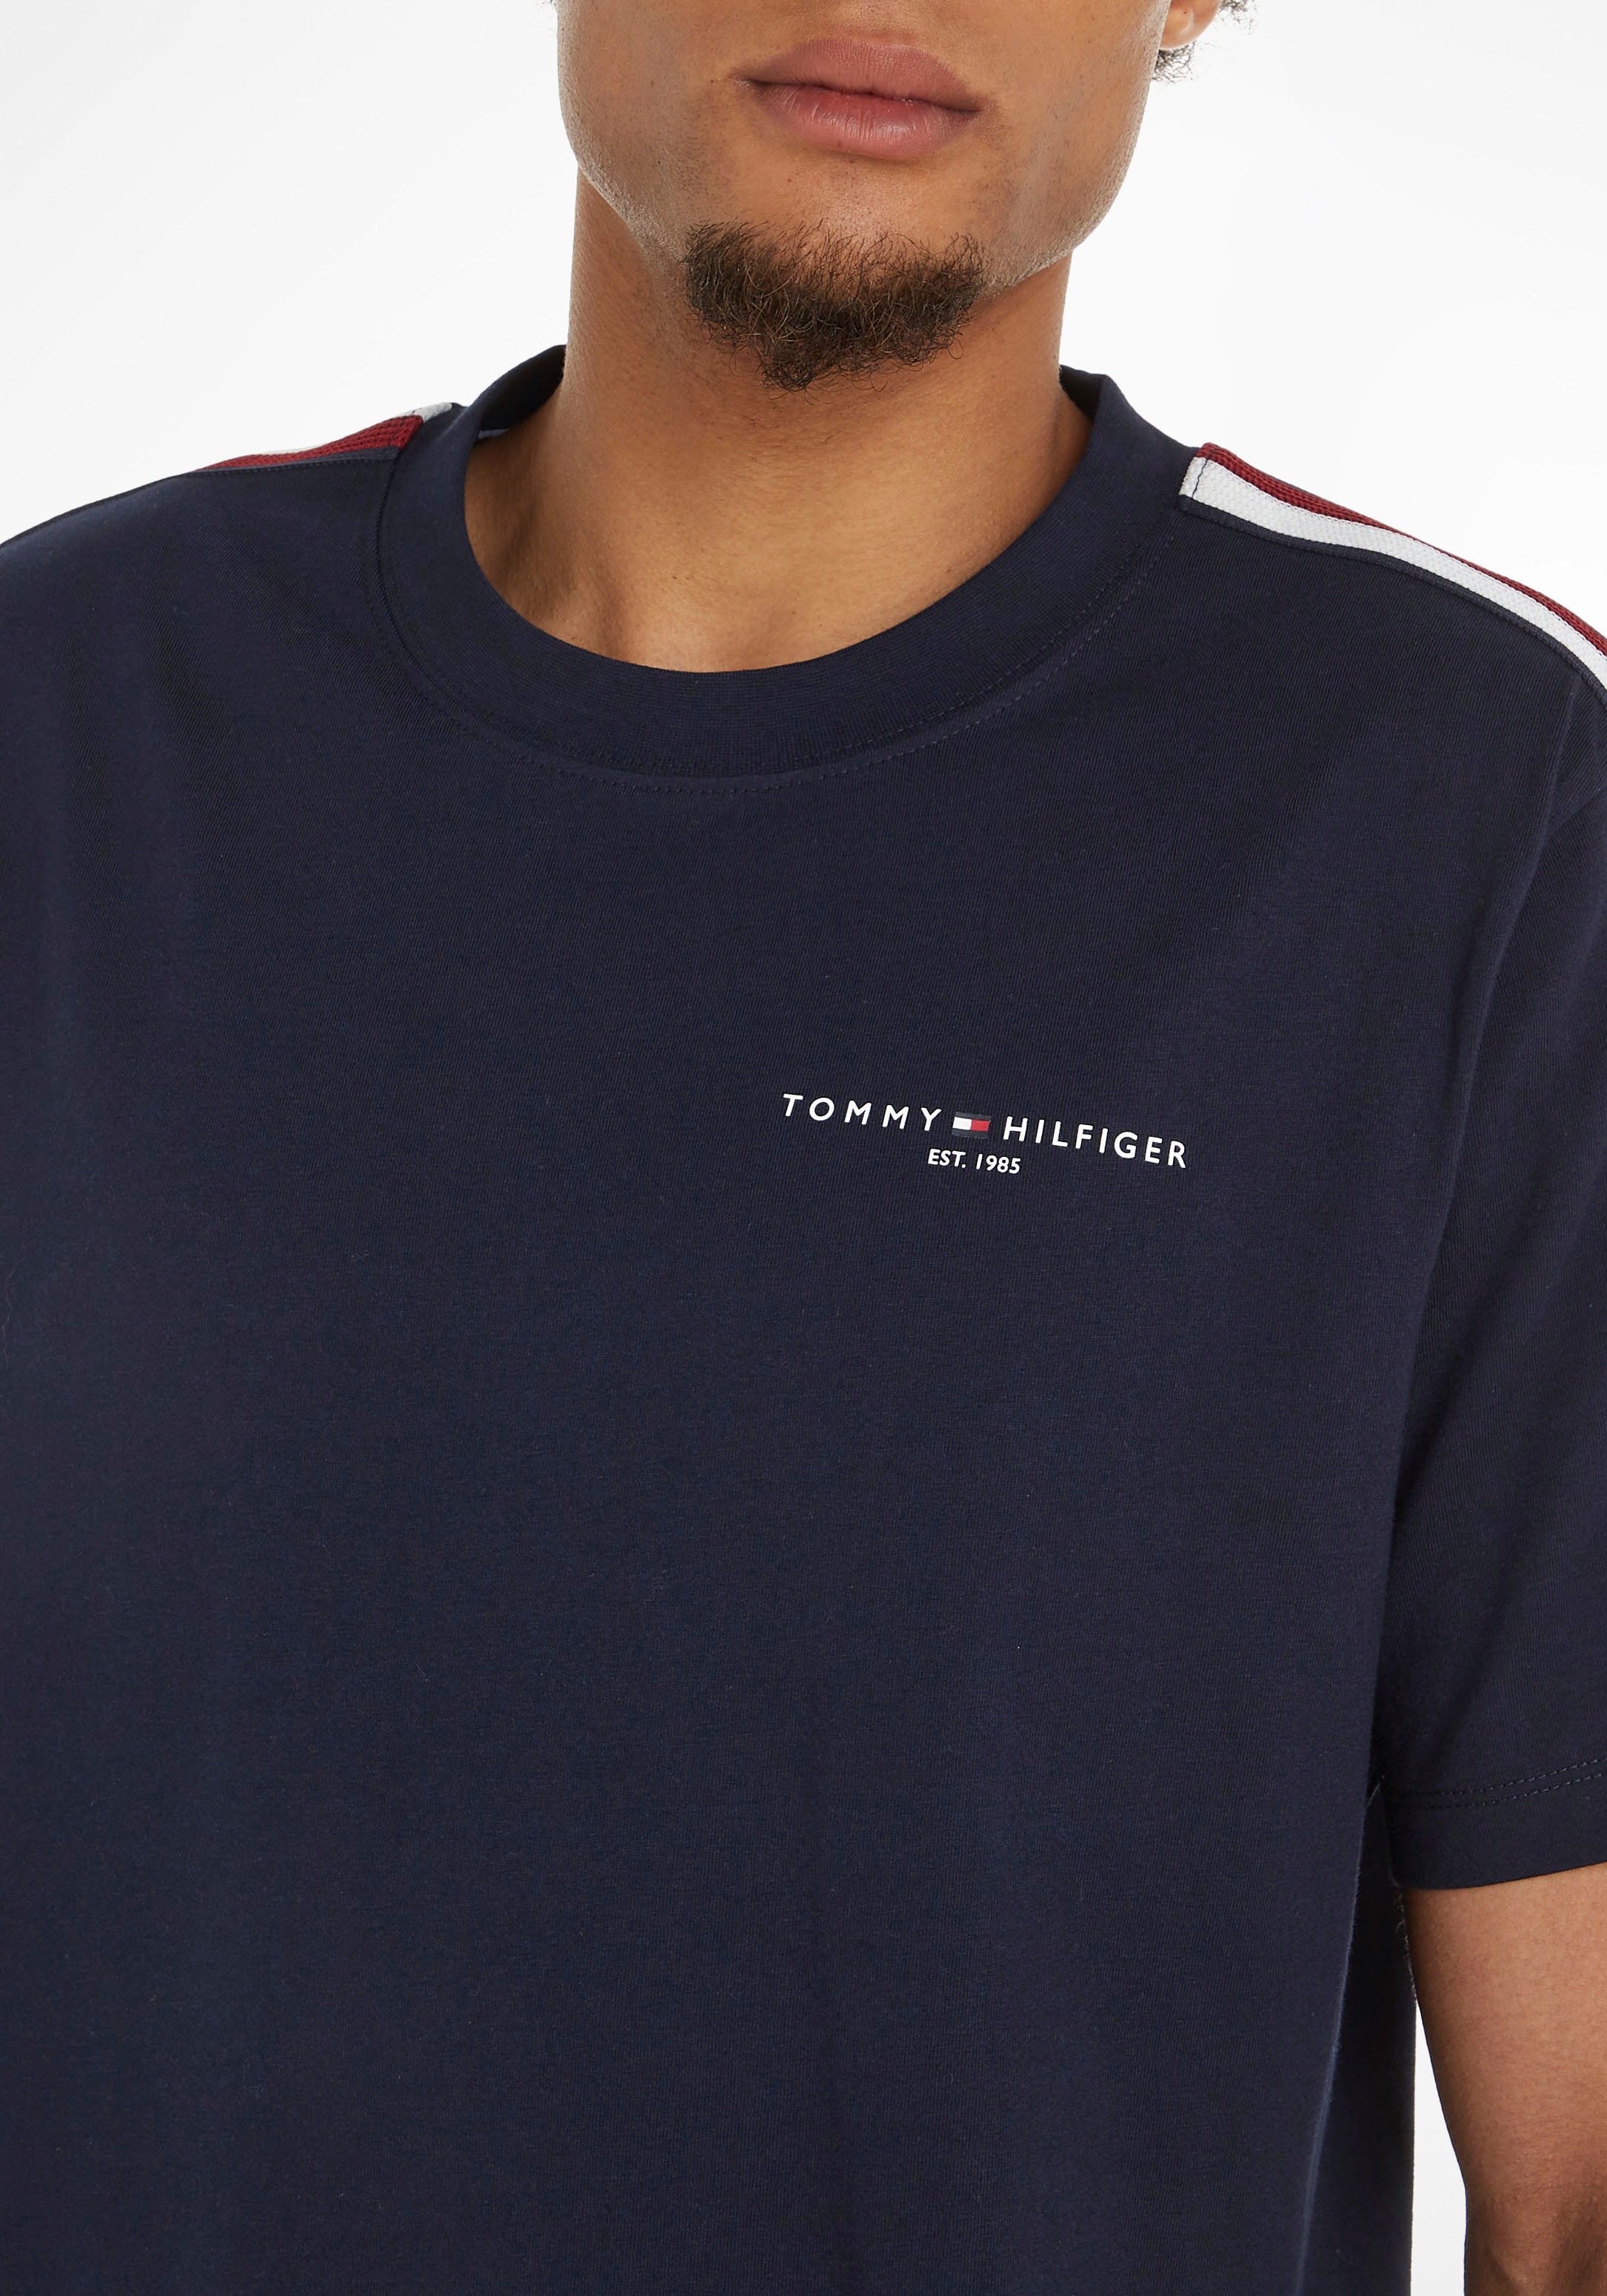 TEE«, Farben PREP STRIPE Tommy Streifen bestellen Hilfiger Rundhalsshirt Ärmeln an »GLOBAL TH- mit in beiden